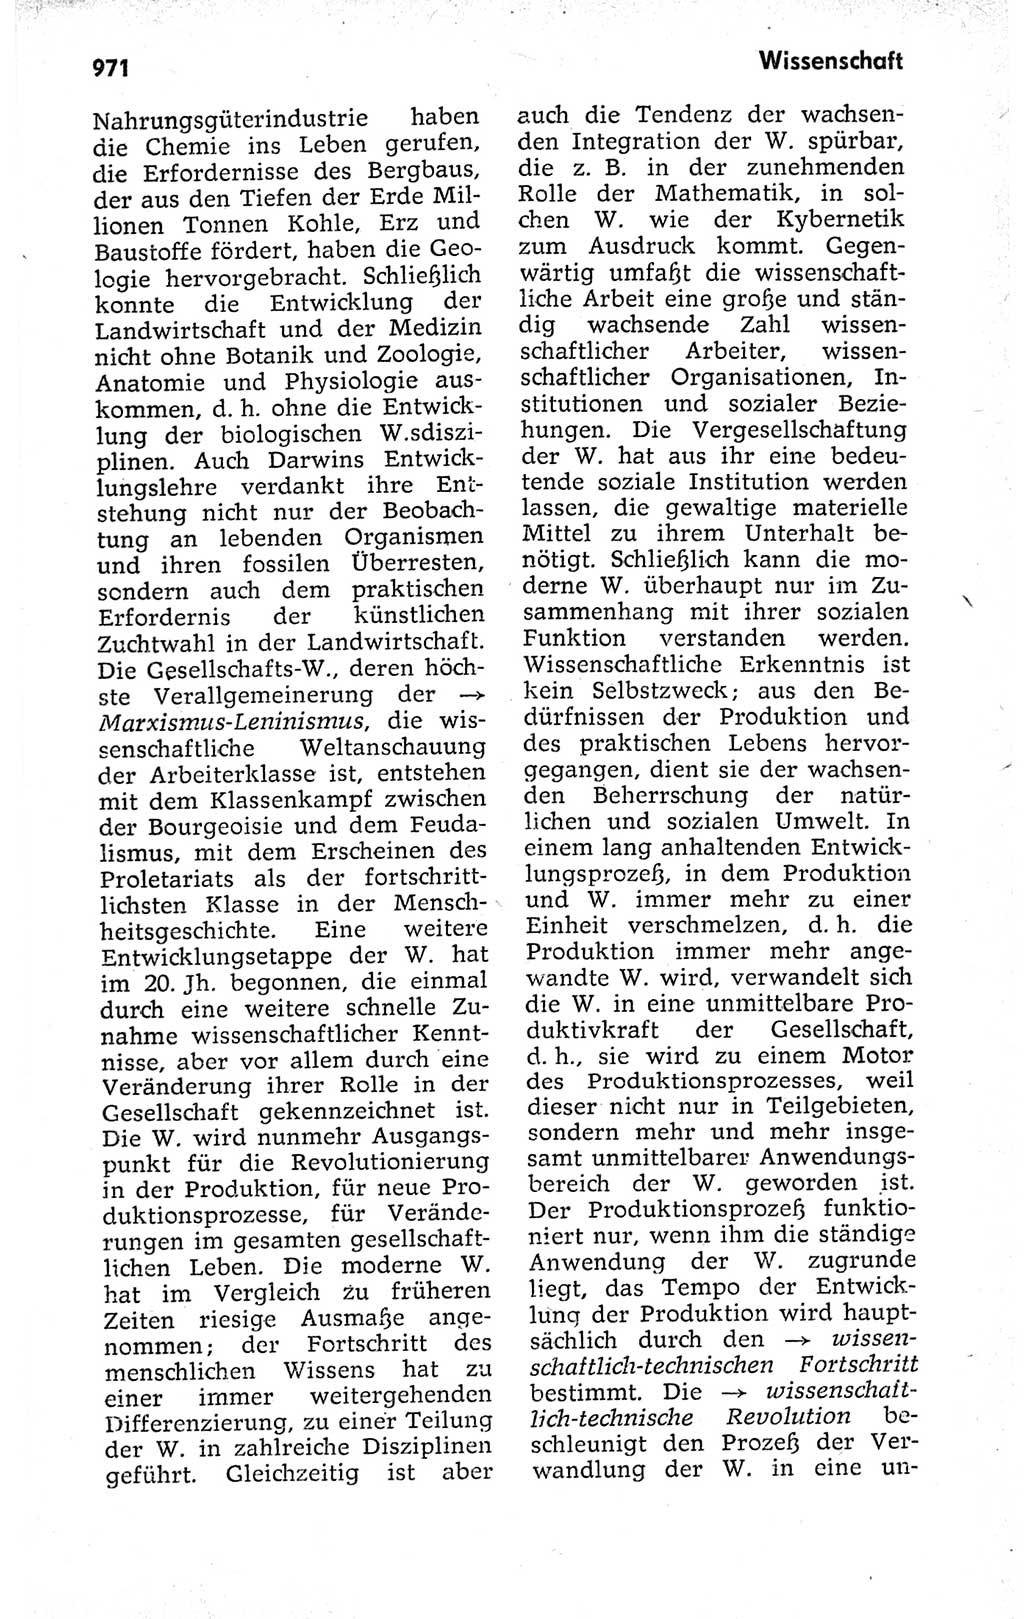 Kleines politisches Wörterbuch [Deutsche Demokratische Republik (DDR)] 1973, Seite 971 (Kl. pol. Wb. DDR 1973, S. 971)